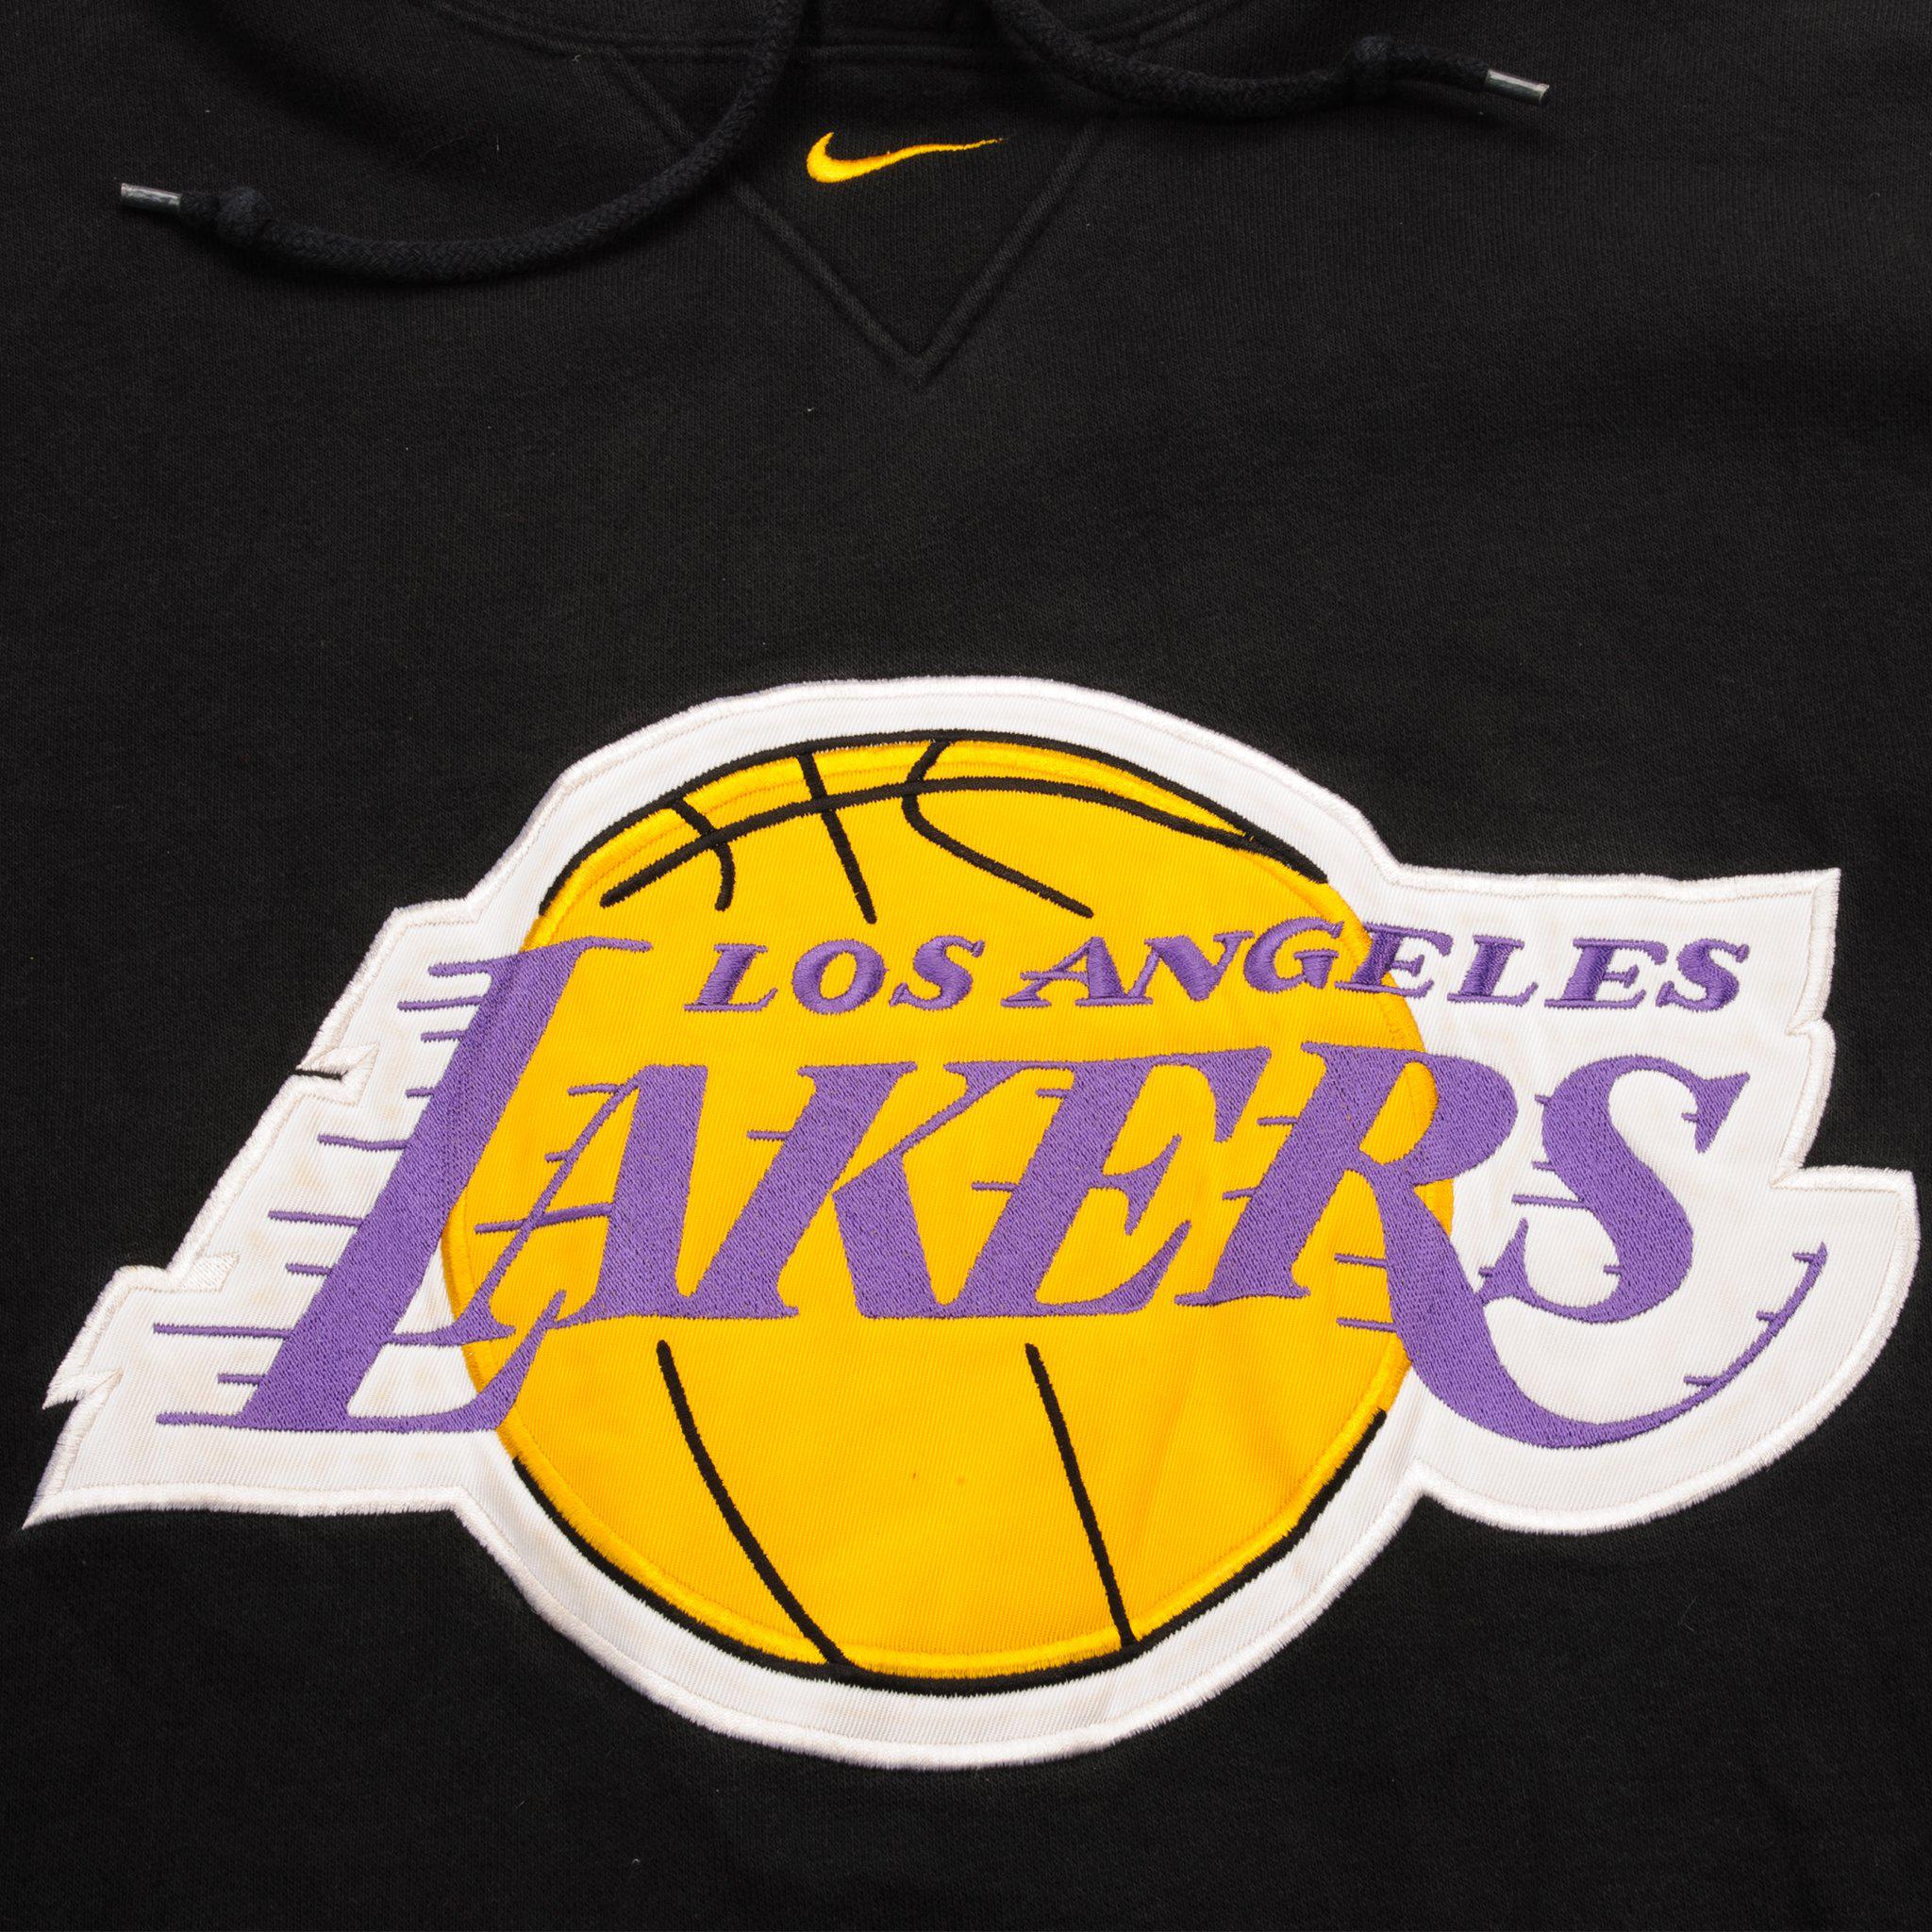 Los Angeles Lakers Nike Hoodies, Lakers Sweatshirts